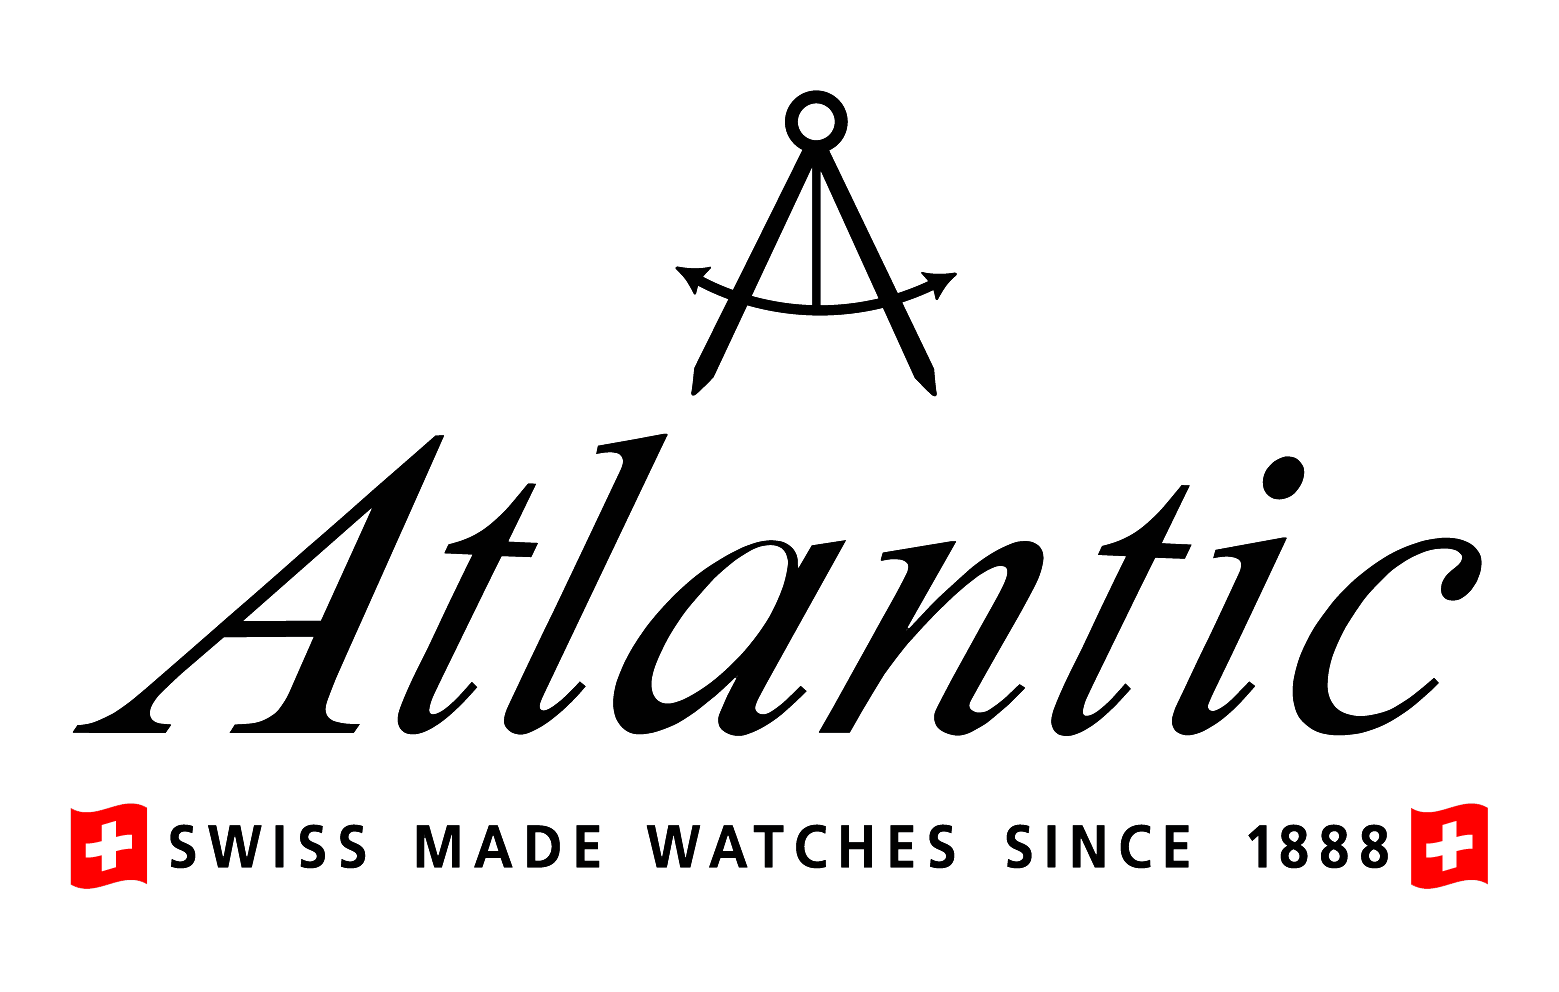 Atlantic Watches